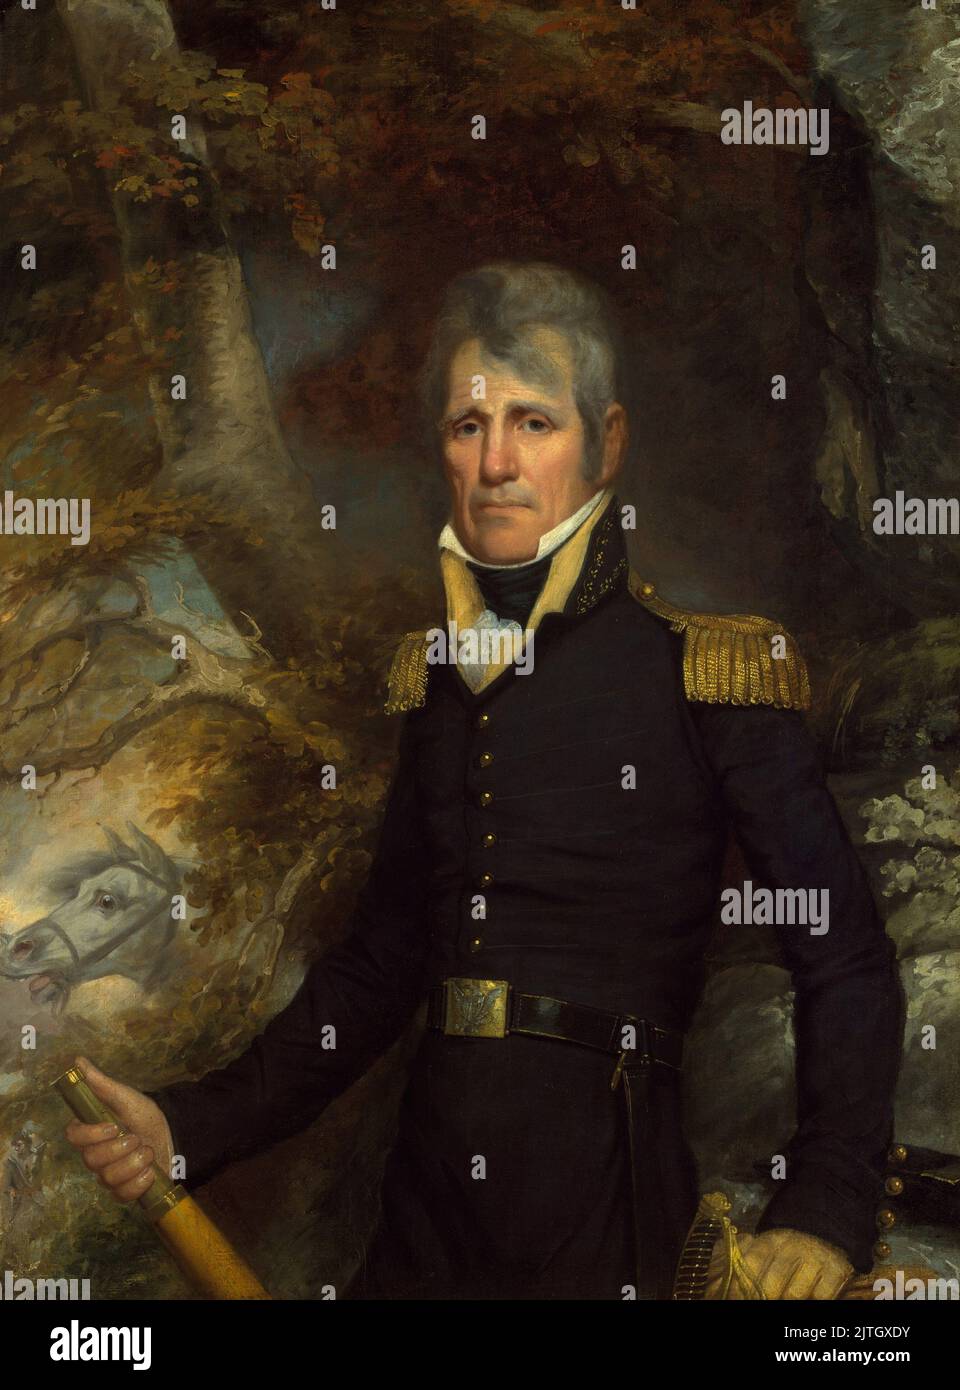 Ein Porträt von General Andrew Jackson von John Wesley Jarvis, c. 1819. Andrew Jackson war der siebte Präsident der USA. In diesem Gemälde war er 52 Jahre alt. Stockfoto